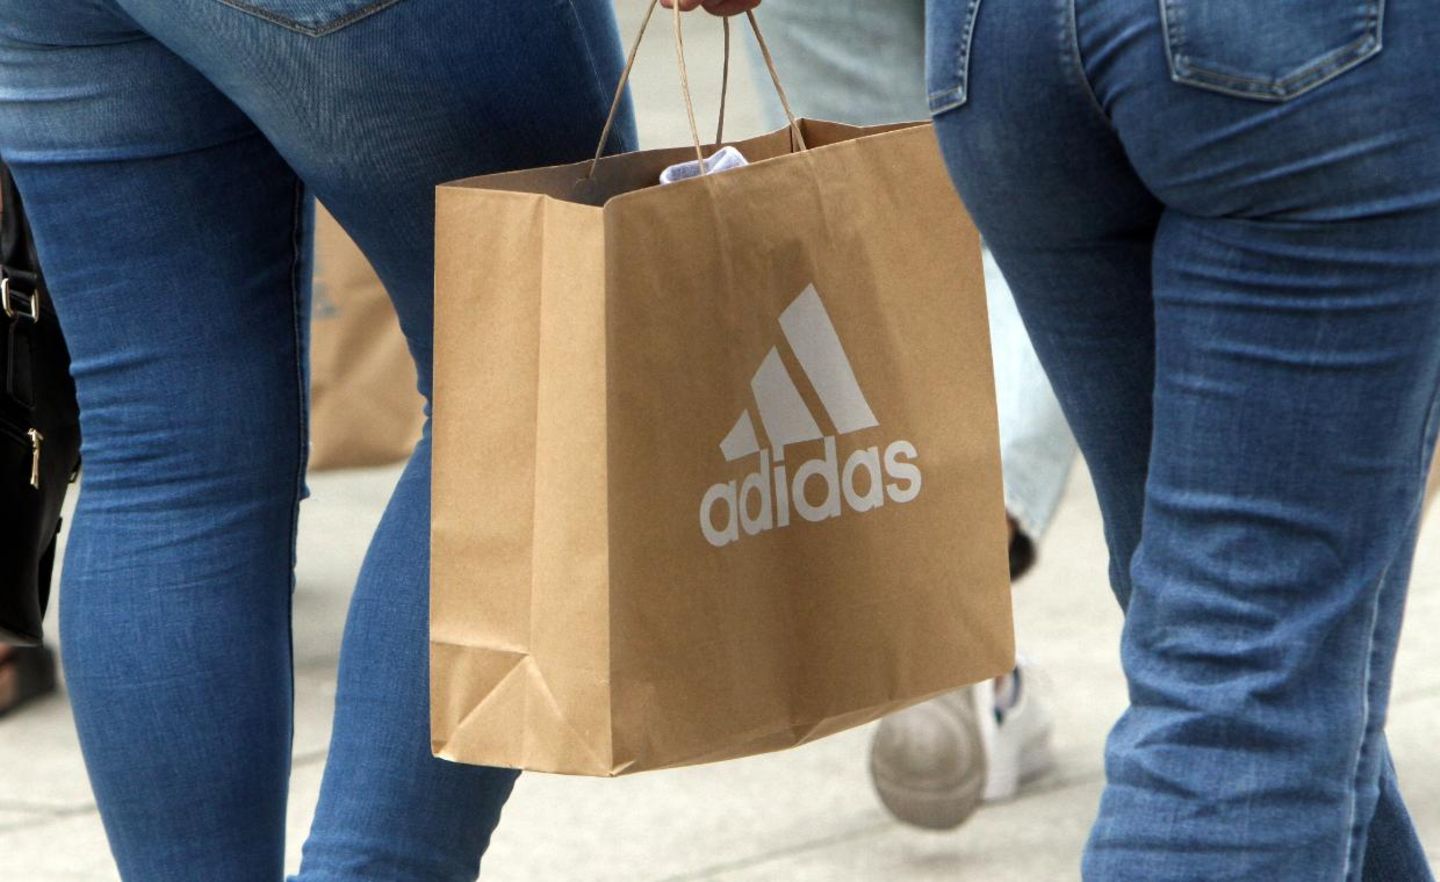 Adidas: Der Ruf des Sportartikelherstllers hat in der Corona-Krise stark gelitten